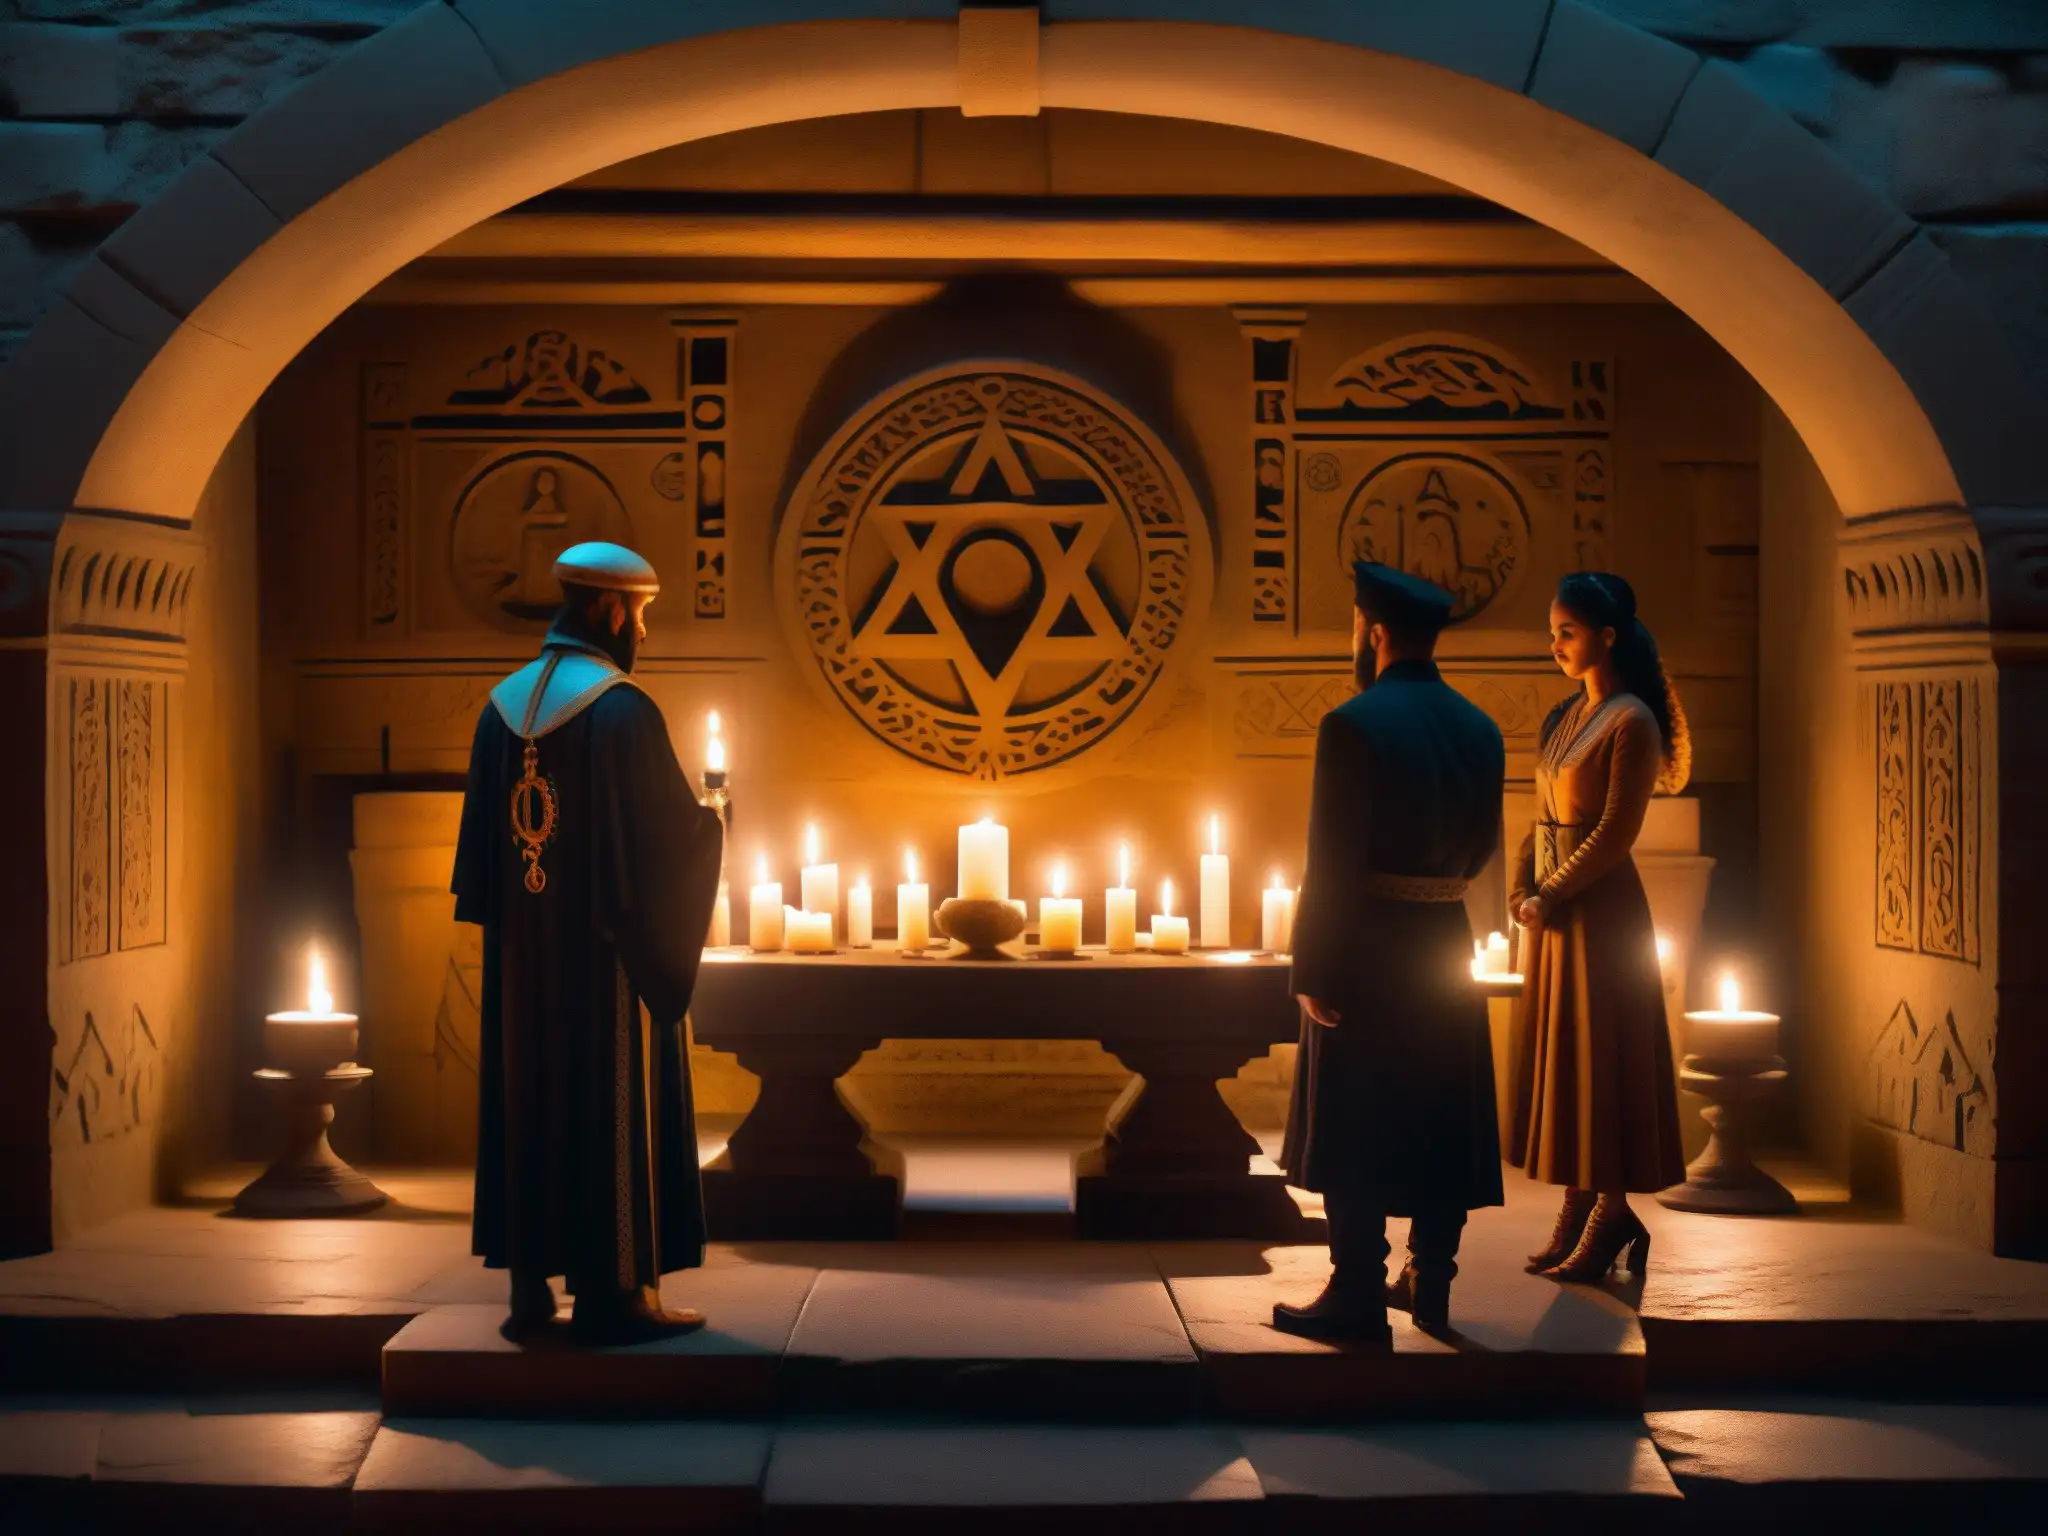 Rumores de rituales ocultistas élite: misteriosa reunión alrededor de un altar con símbolos grabados, velas y figuras en penumbra